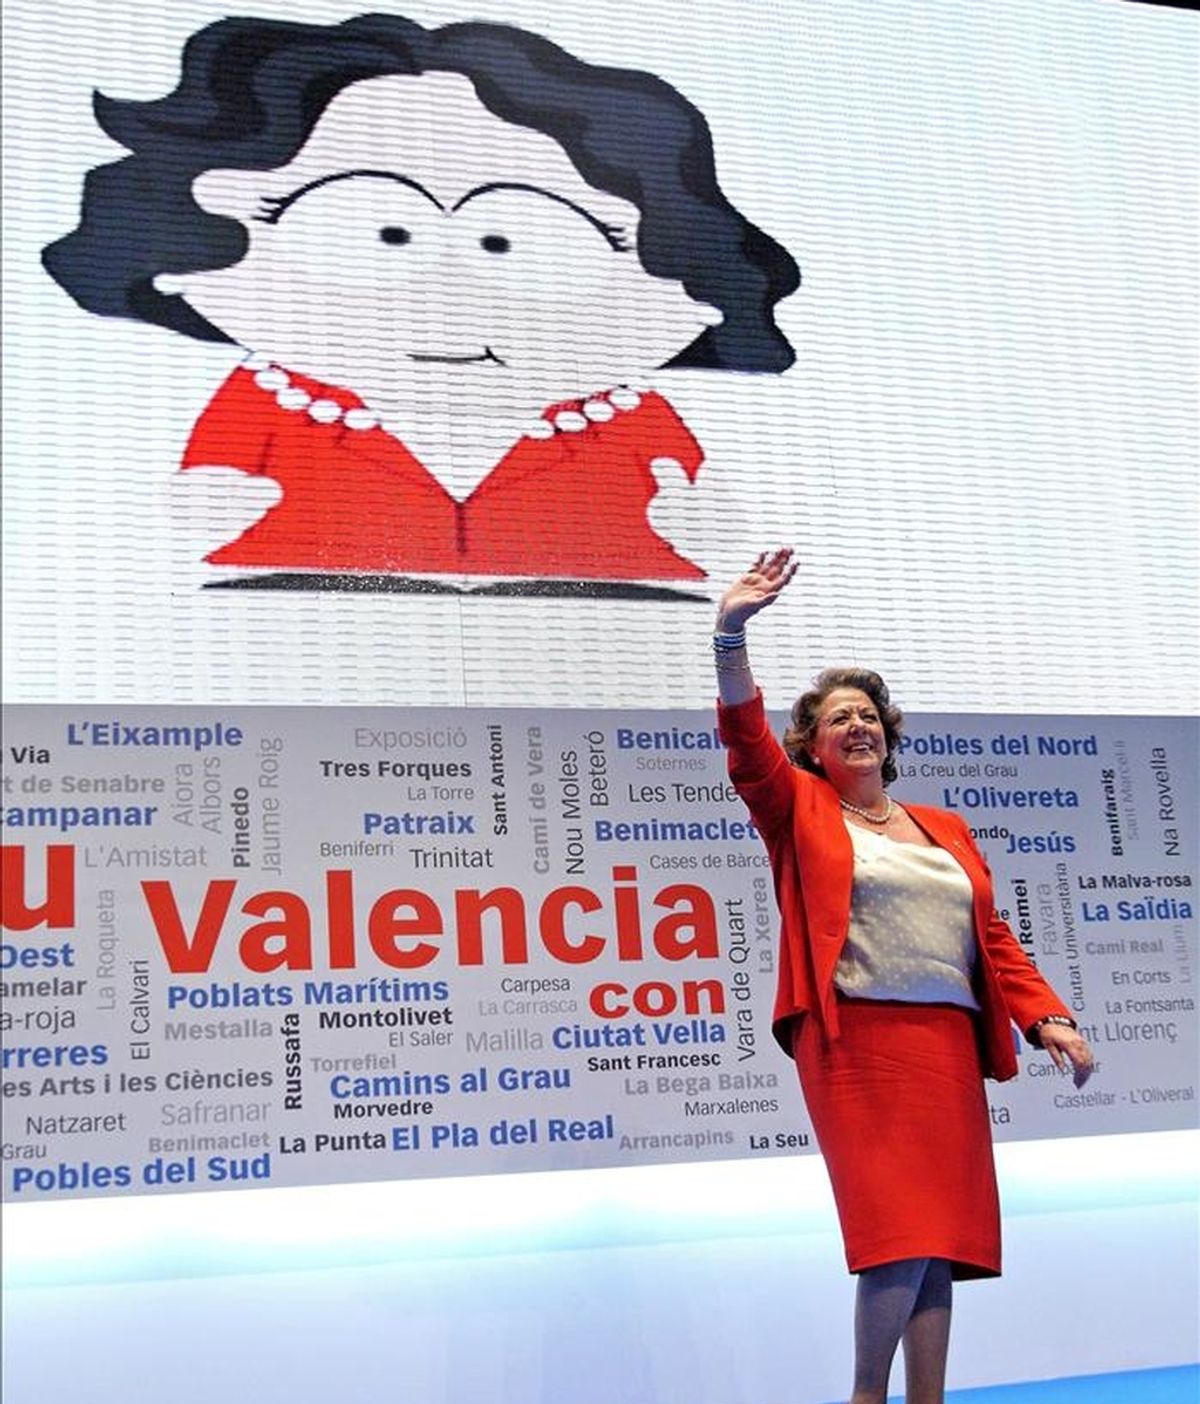 La alcaldesa de Valencia, Rita Barberá, ante una caricatura de ella durante el acto celebrado hoy en el que fue proclamada candidata del PP a la Alcaldía valenciana. EFE